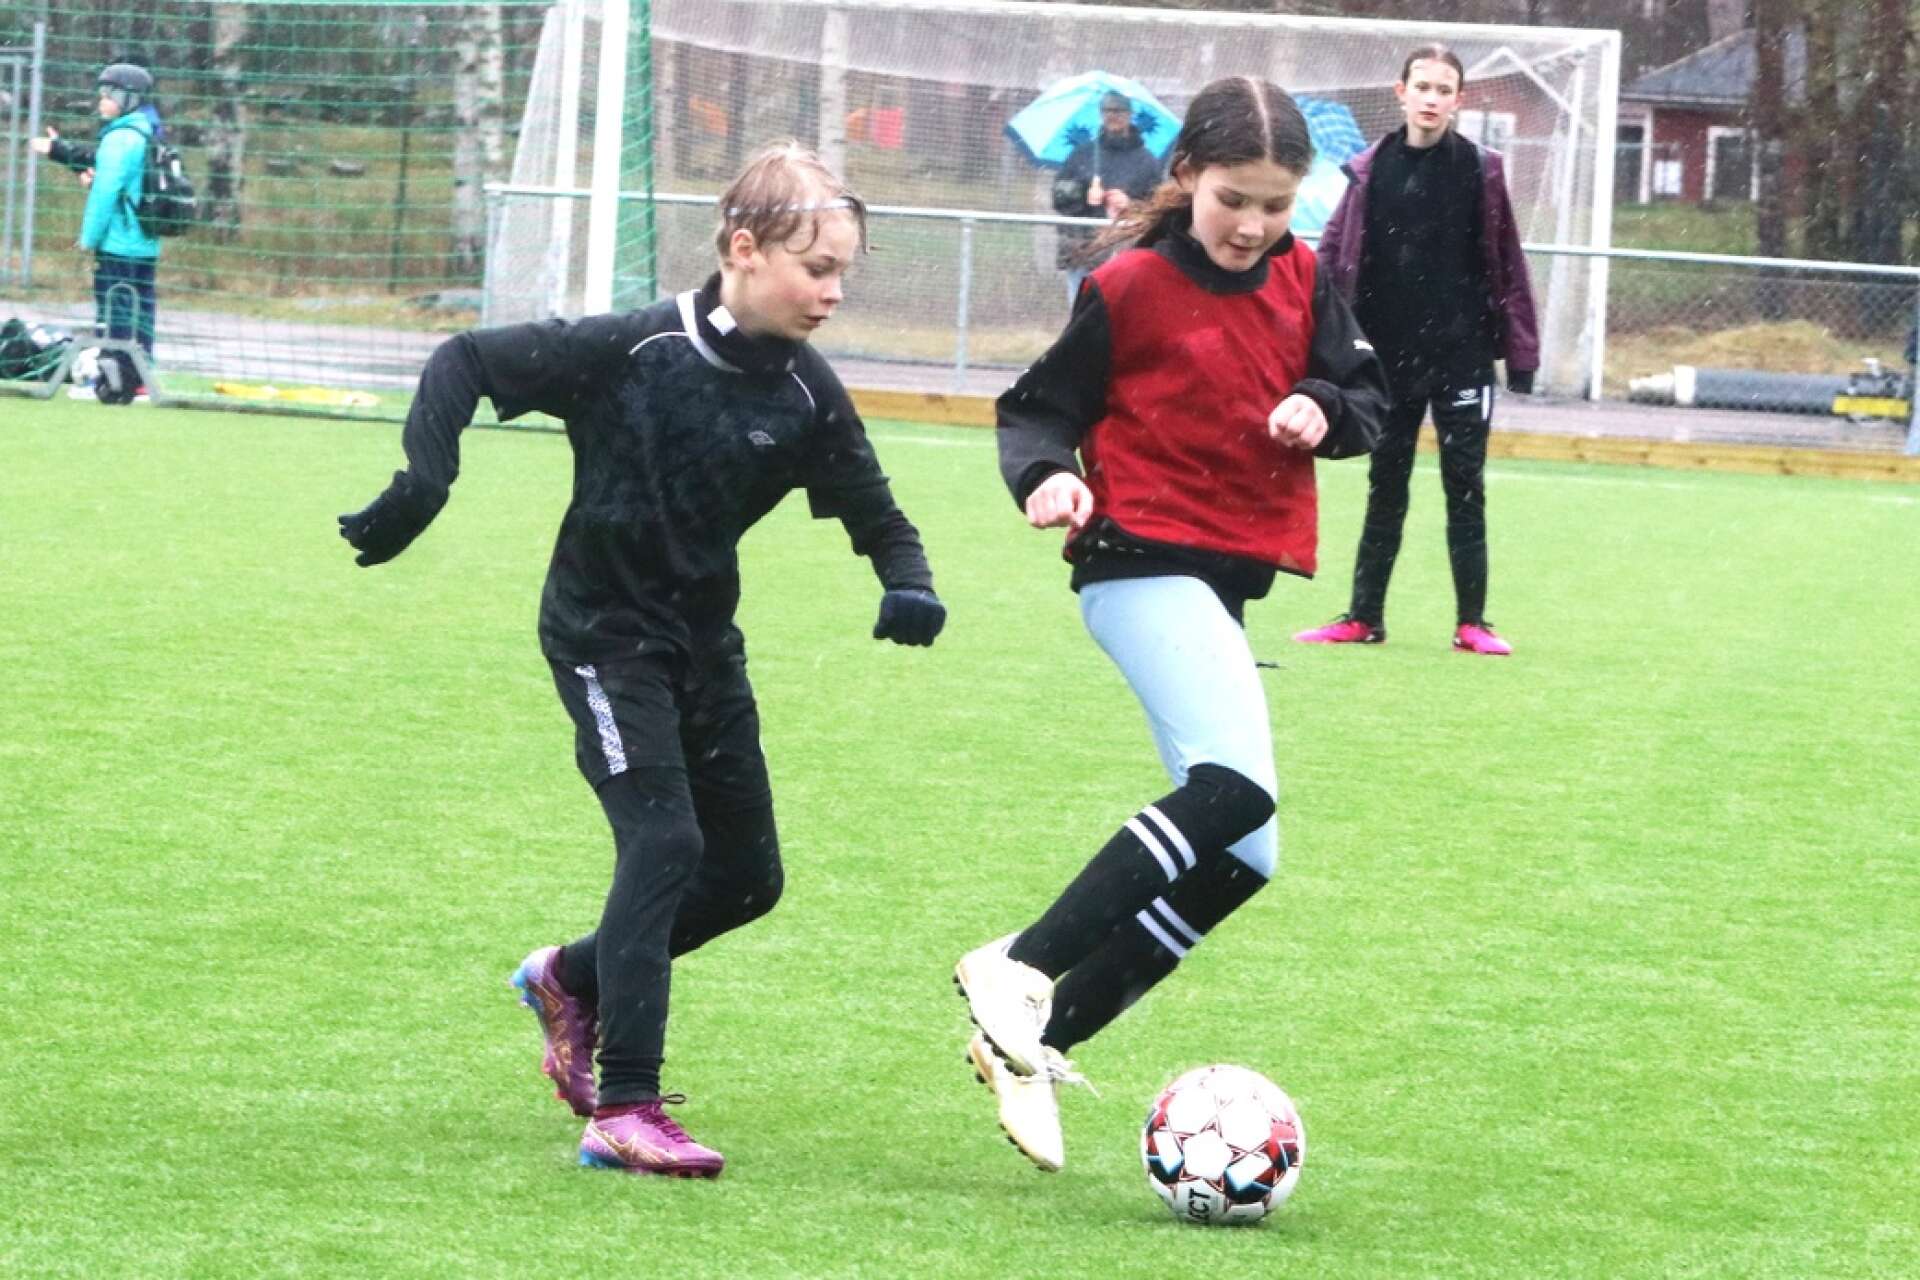 Alicia Rhodin i klass 4B på Södra skolan, med bollen, uppvaktas av Oscar Kjellebäck i klass 4A på Södra skolan.